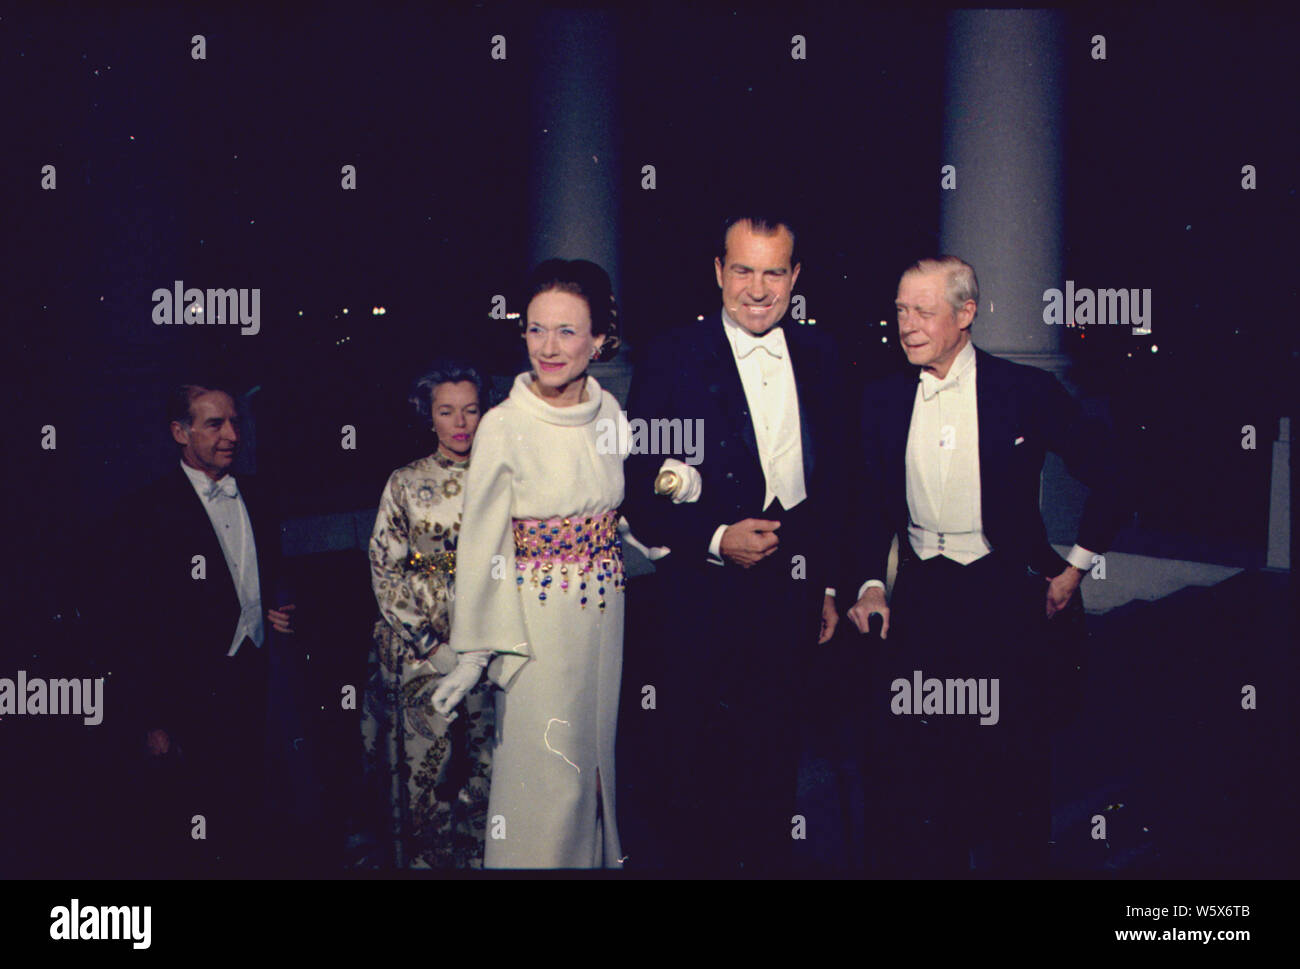 Präsident Nixon grüßt der Herzog und die Herzogin von Windsor; Umfang und Inhalt: Im Bild: die Herzogin von Windsor, Nixon, Herzog von Windsor. Betrifft: Staats - Großbritannien. Stockfoto